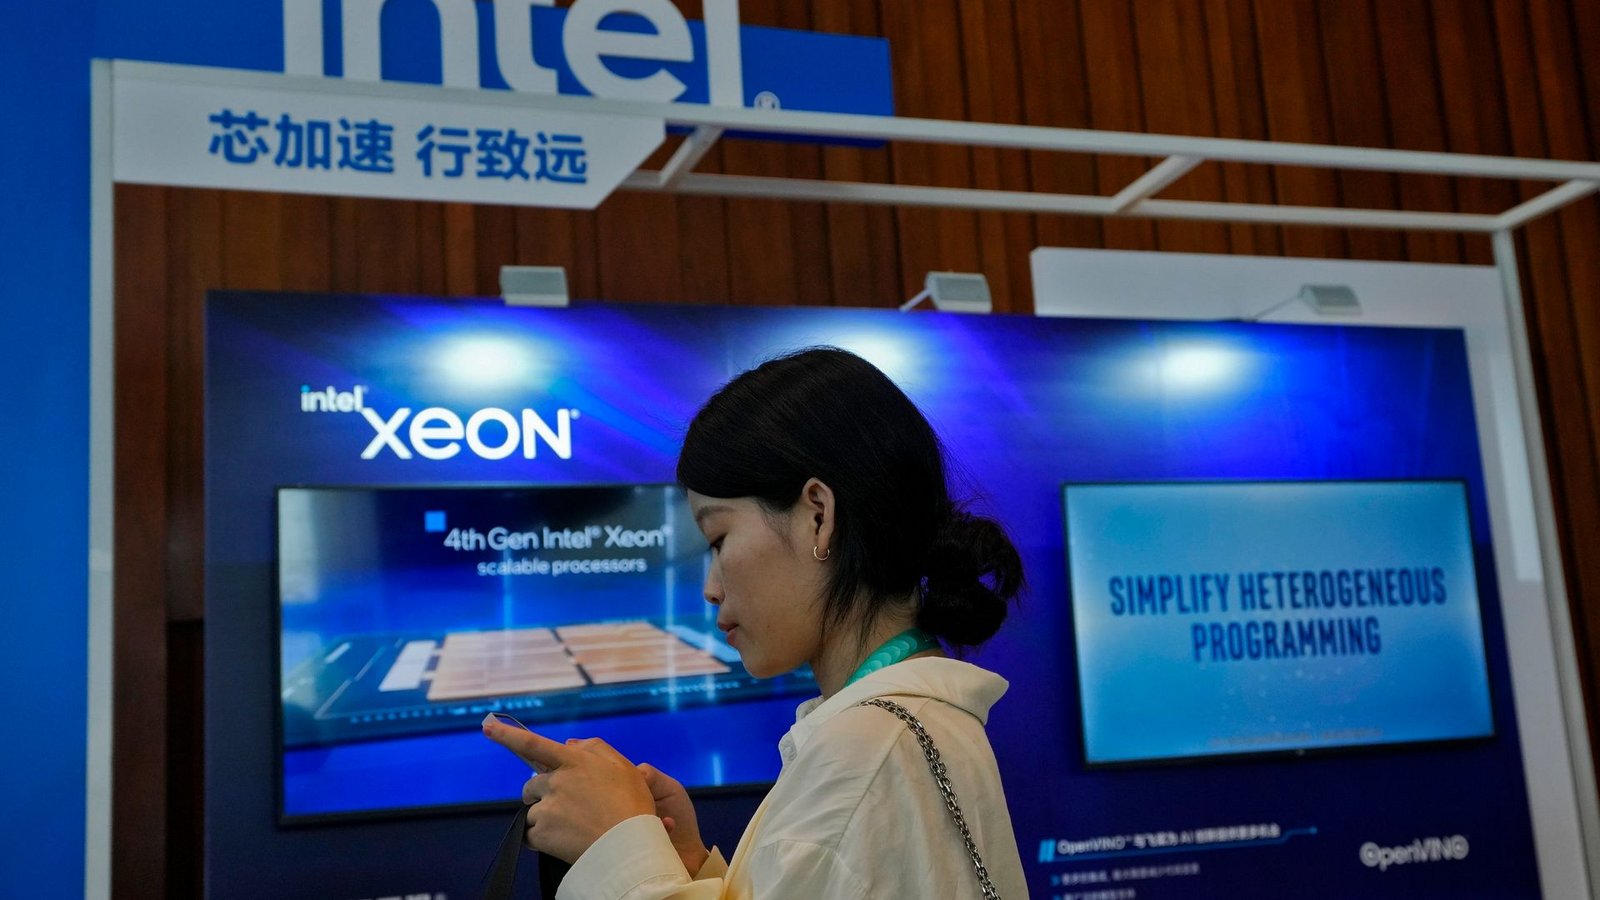 Ein Intel-Stand in Peking wirbt während einer Messe für Xeon-Chips.Foto: Andy Wong/AP/dpa